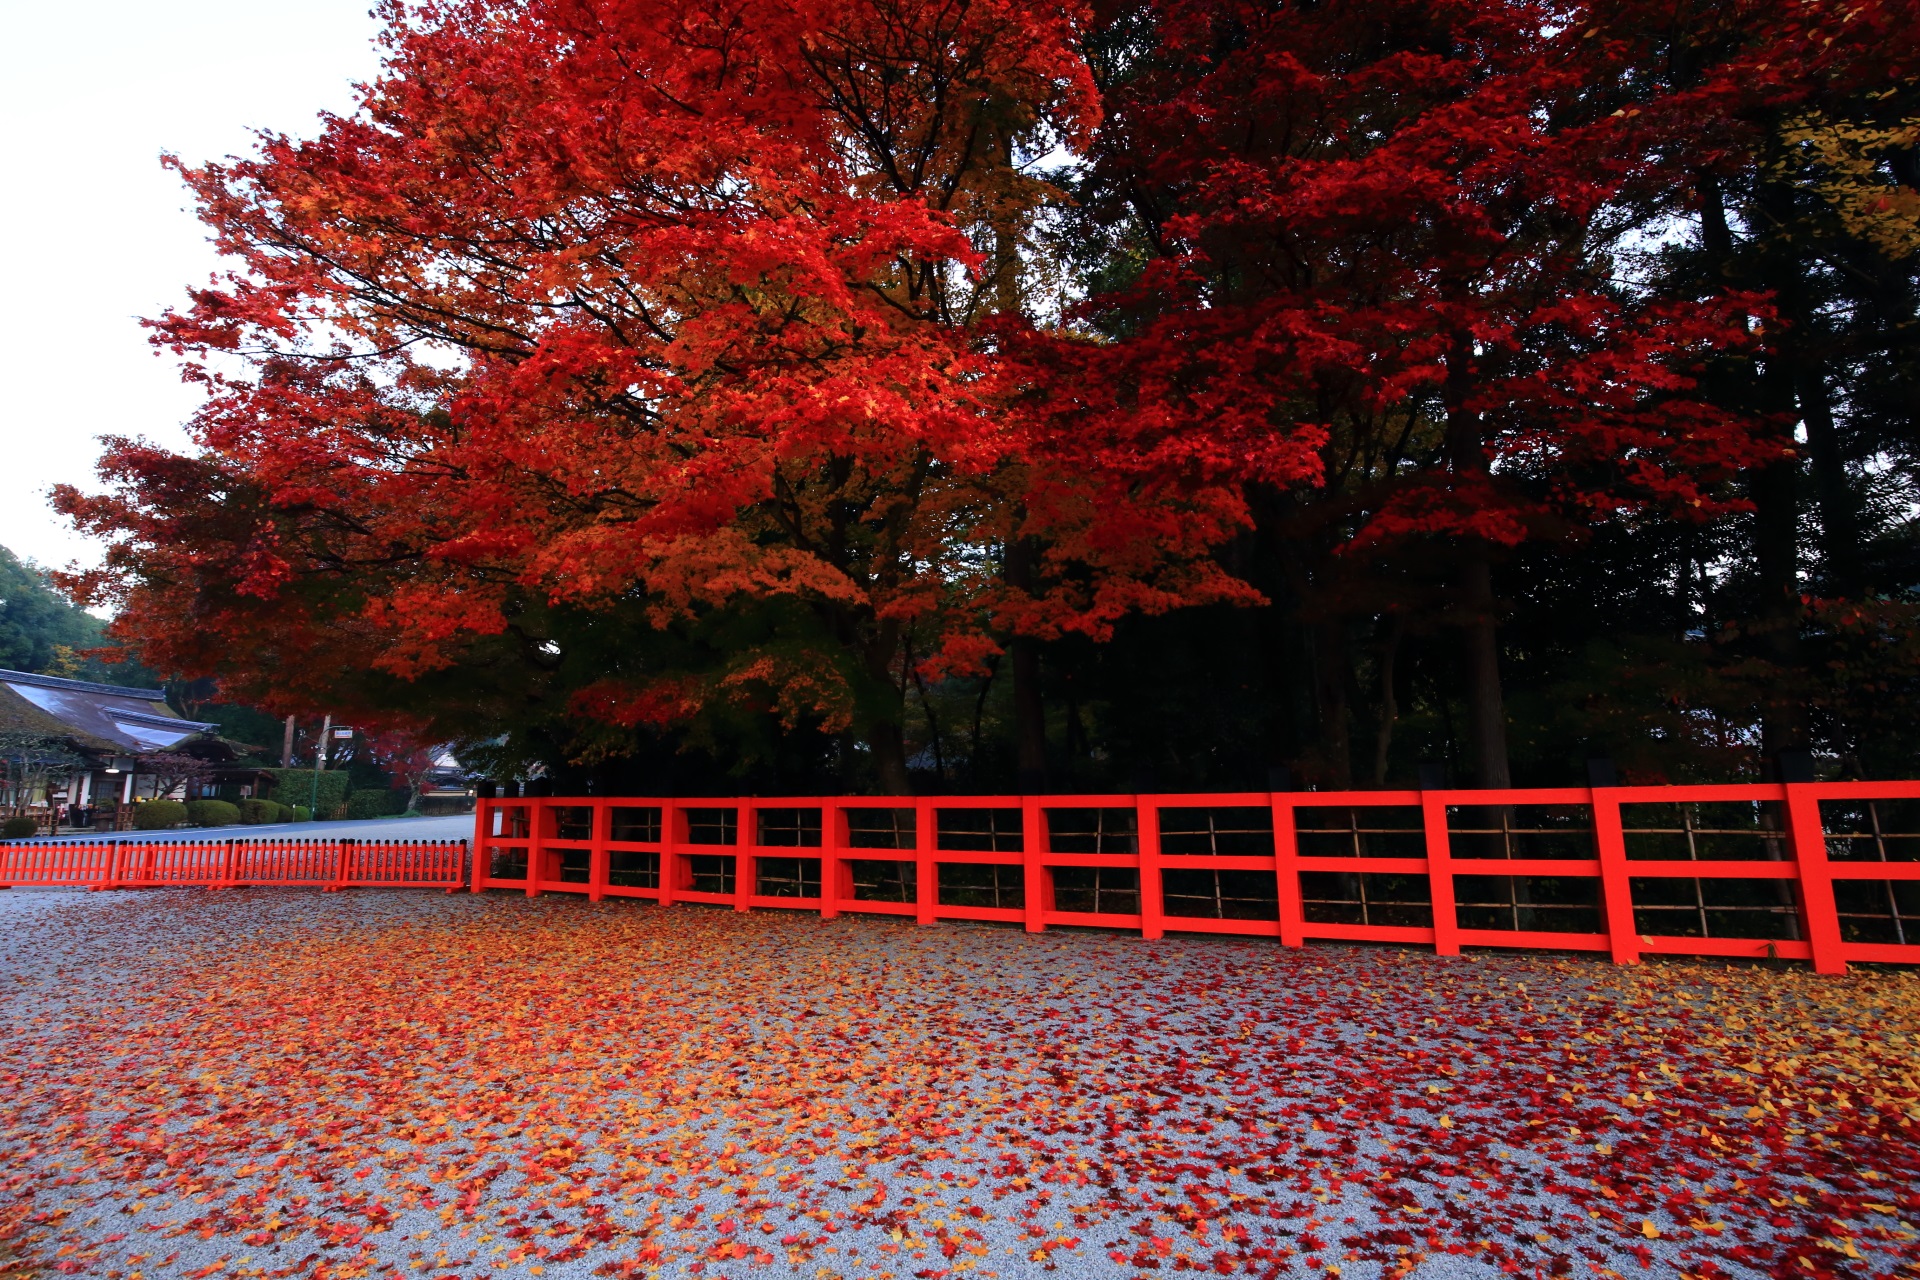 上賀茂神社の赤い紅葉と黄色い紅葉と銀杏の絶妙の色合い